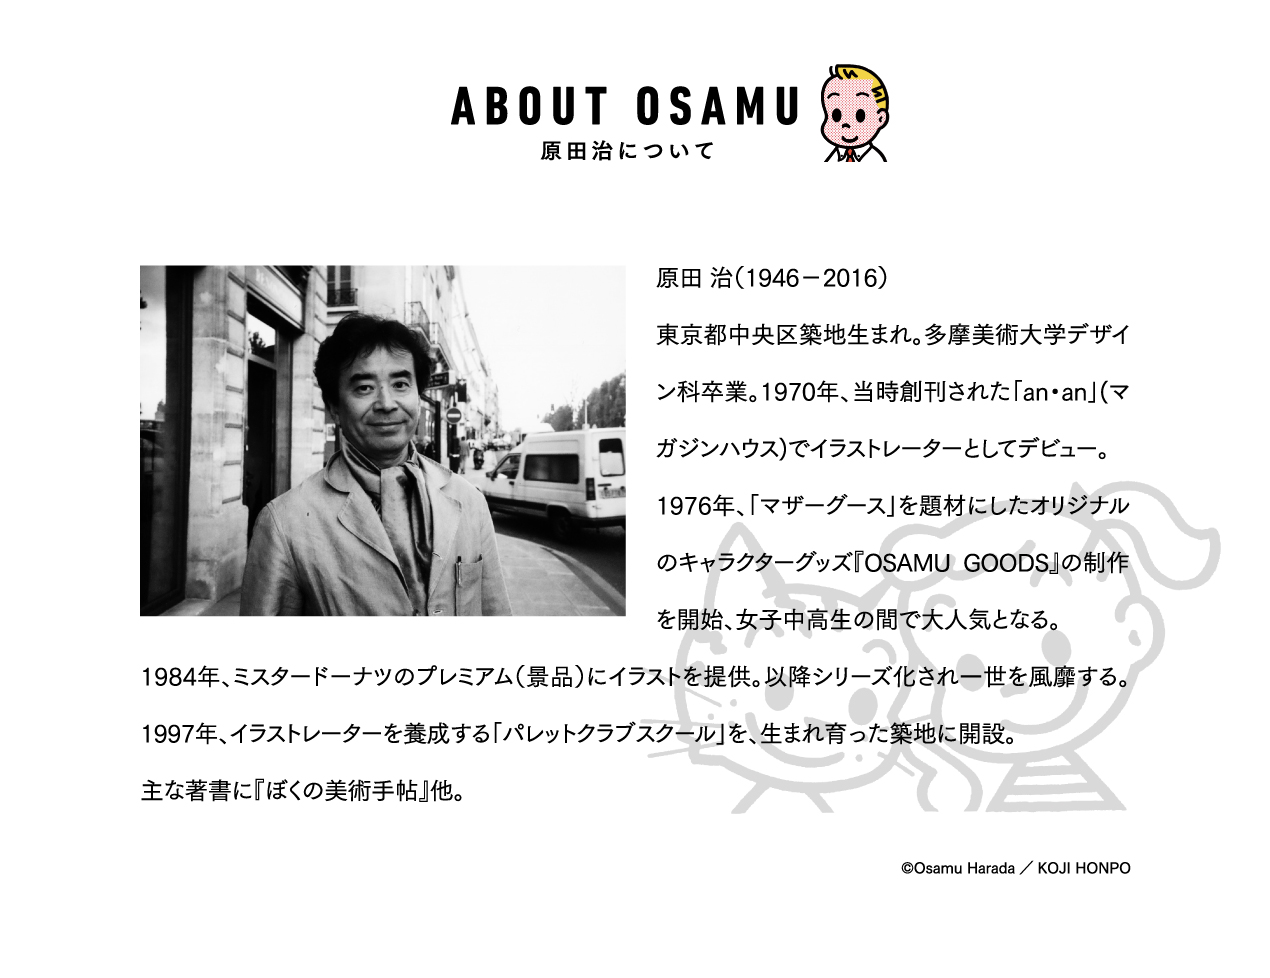 ABOUT OSAM 原田治について　原田 治（1946-2016）東京都中央区築地生まれ。多摩美術大学デザイン科卒業。1970年、当時創刊された「an・an」(マガジンハウス)でイラストレーターとしてデビュー。1976年、「マザーグース」を題材にしたオリジナルのキャラクターグッズ『OSAMU GOODS』の制作を開始、女子中高生の間で大人気となる。1984年、ミスタードーナツのプレミアム（景品）にイラストを提供。以降シリーズ化され一世を風靡する。1997年、イラストレーターを養成する「パレットクラブスクール」を、生まれ育った築地に開設。